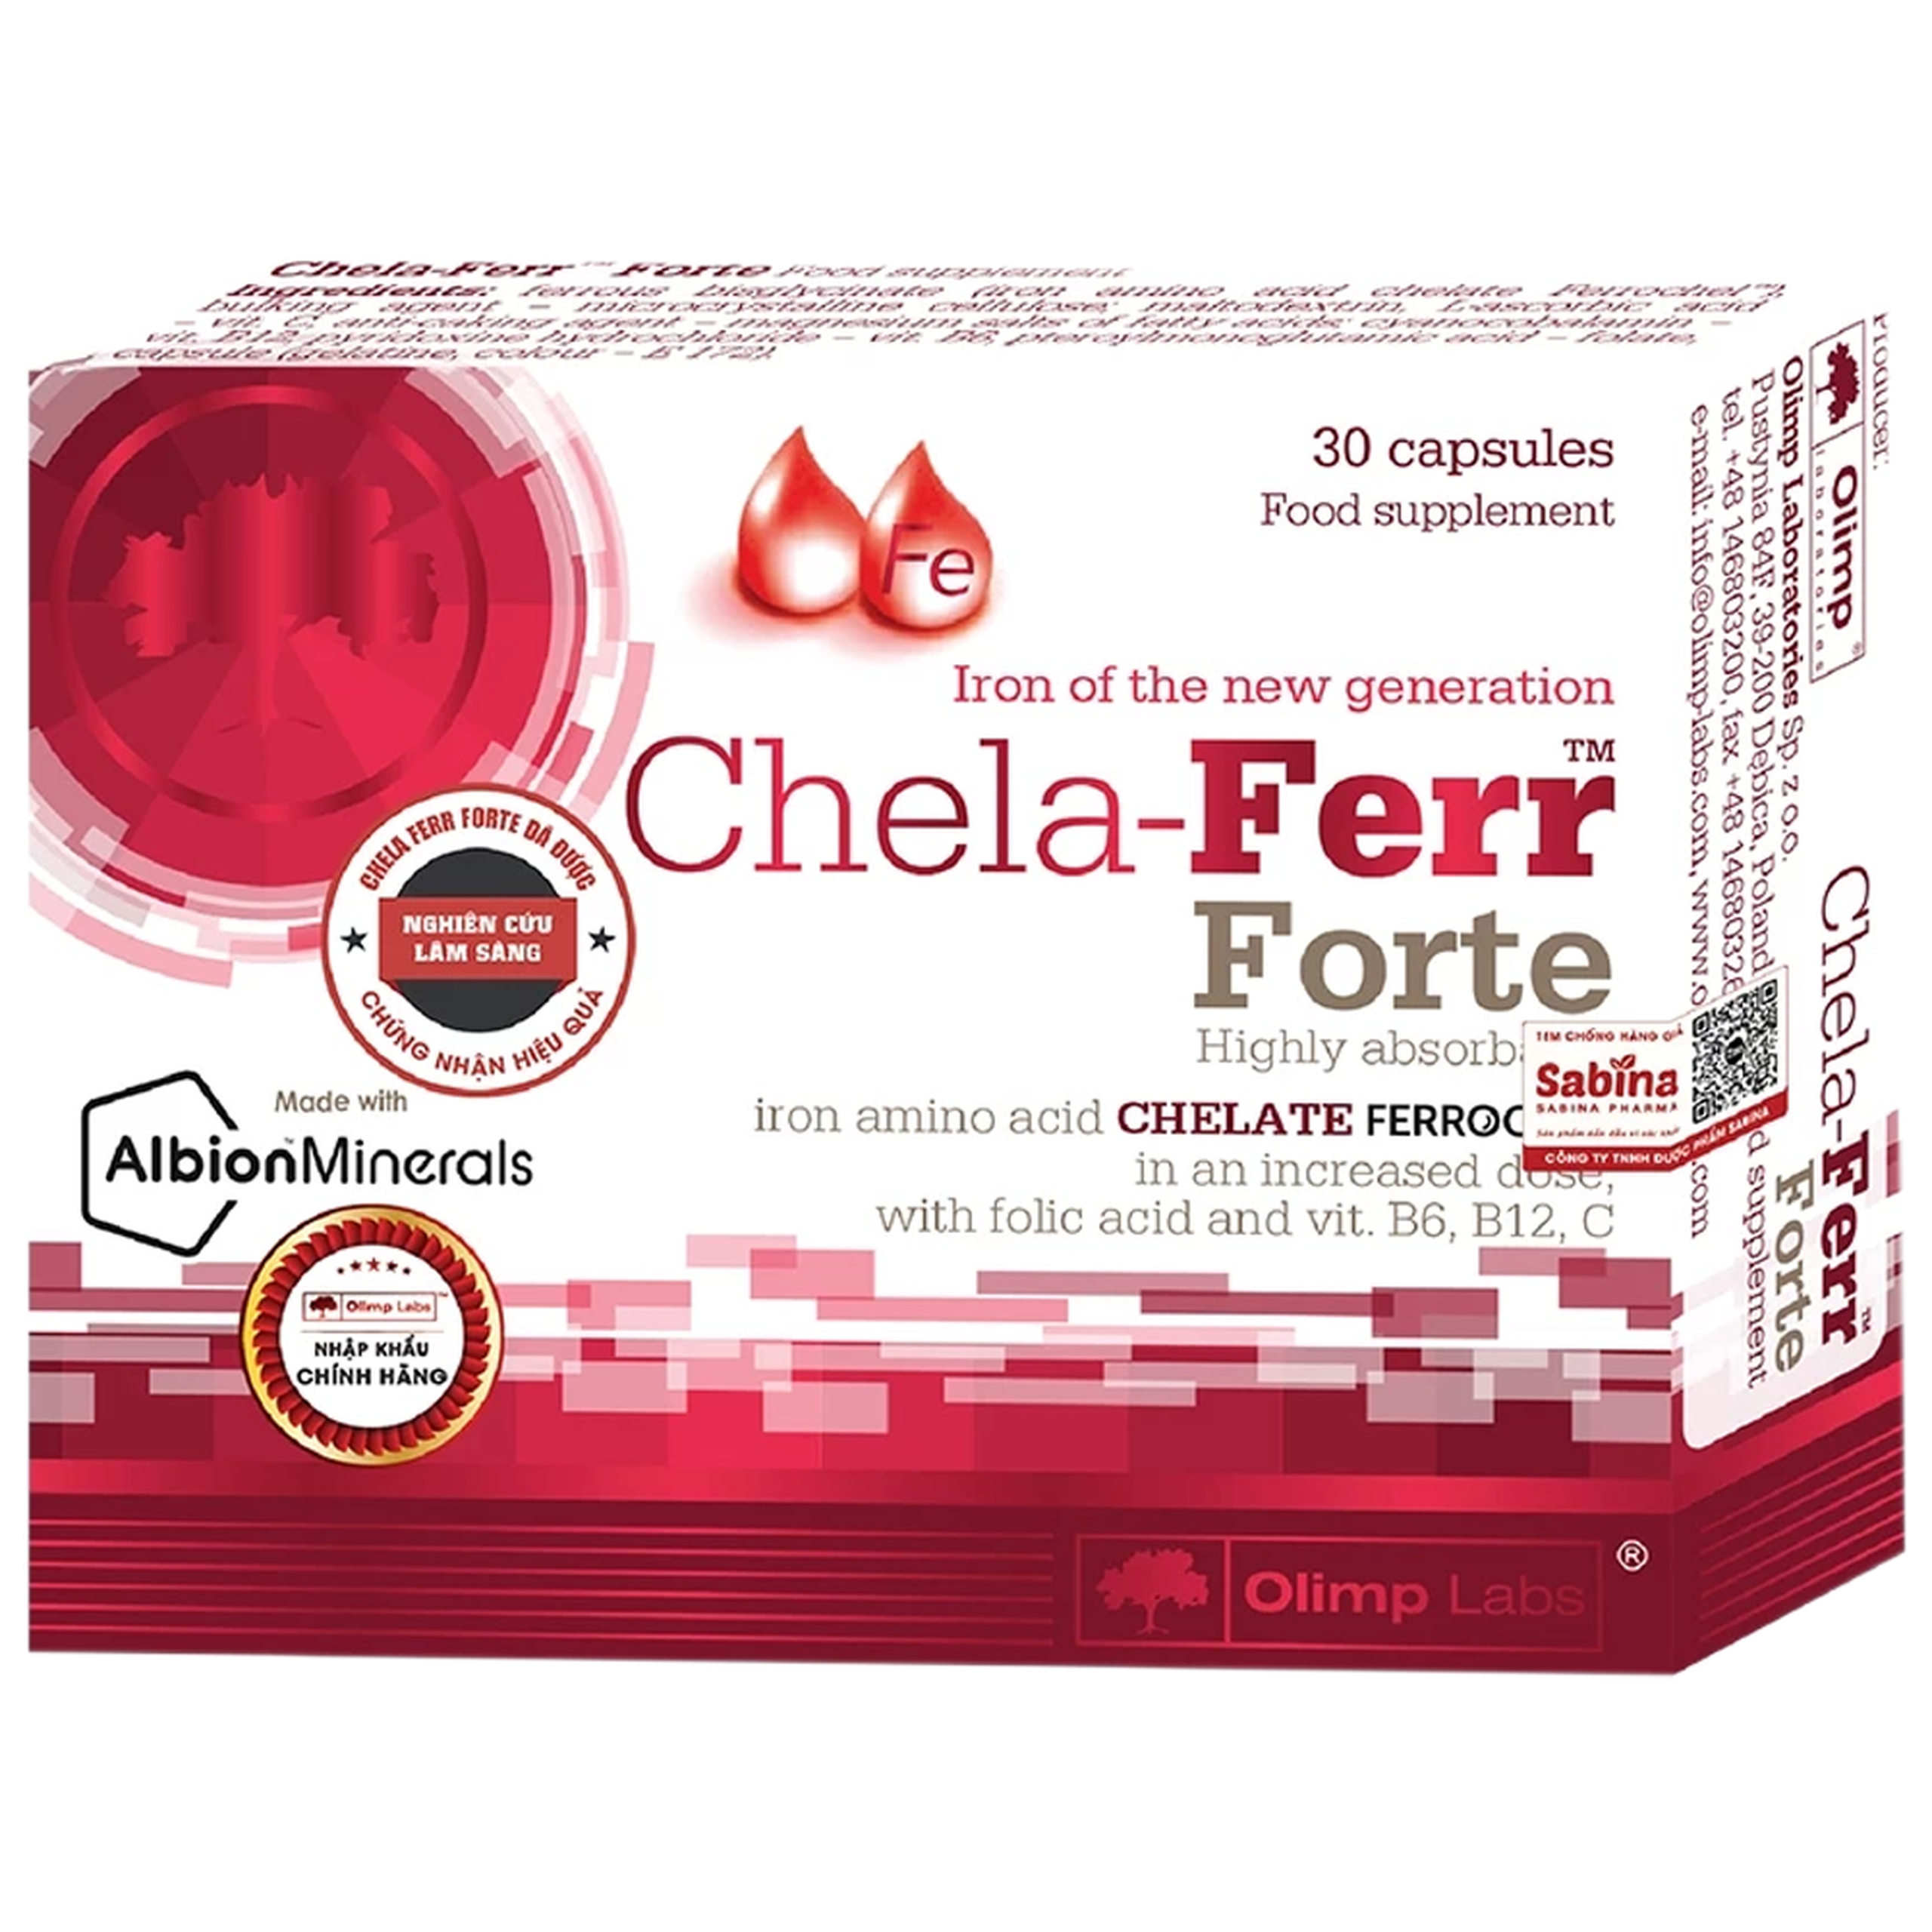 Viên uống Chela-Ferr Forte Olimp Laps bổ sung sắt, hỗ trợ cải thiện thiếu máu (30 viên)